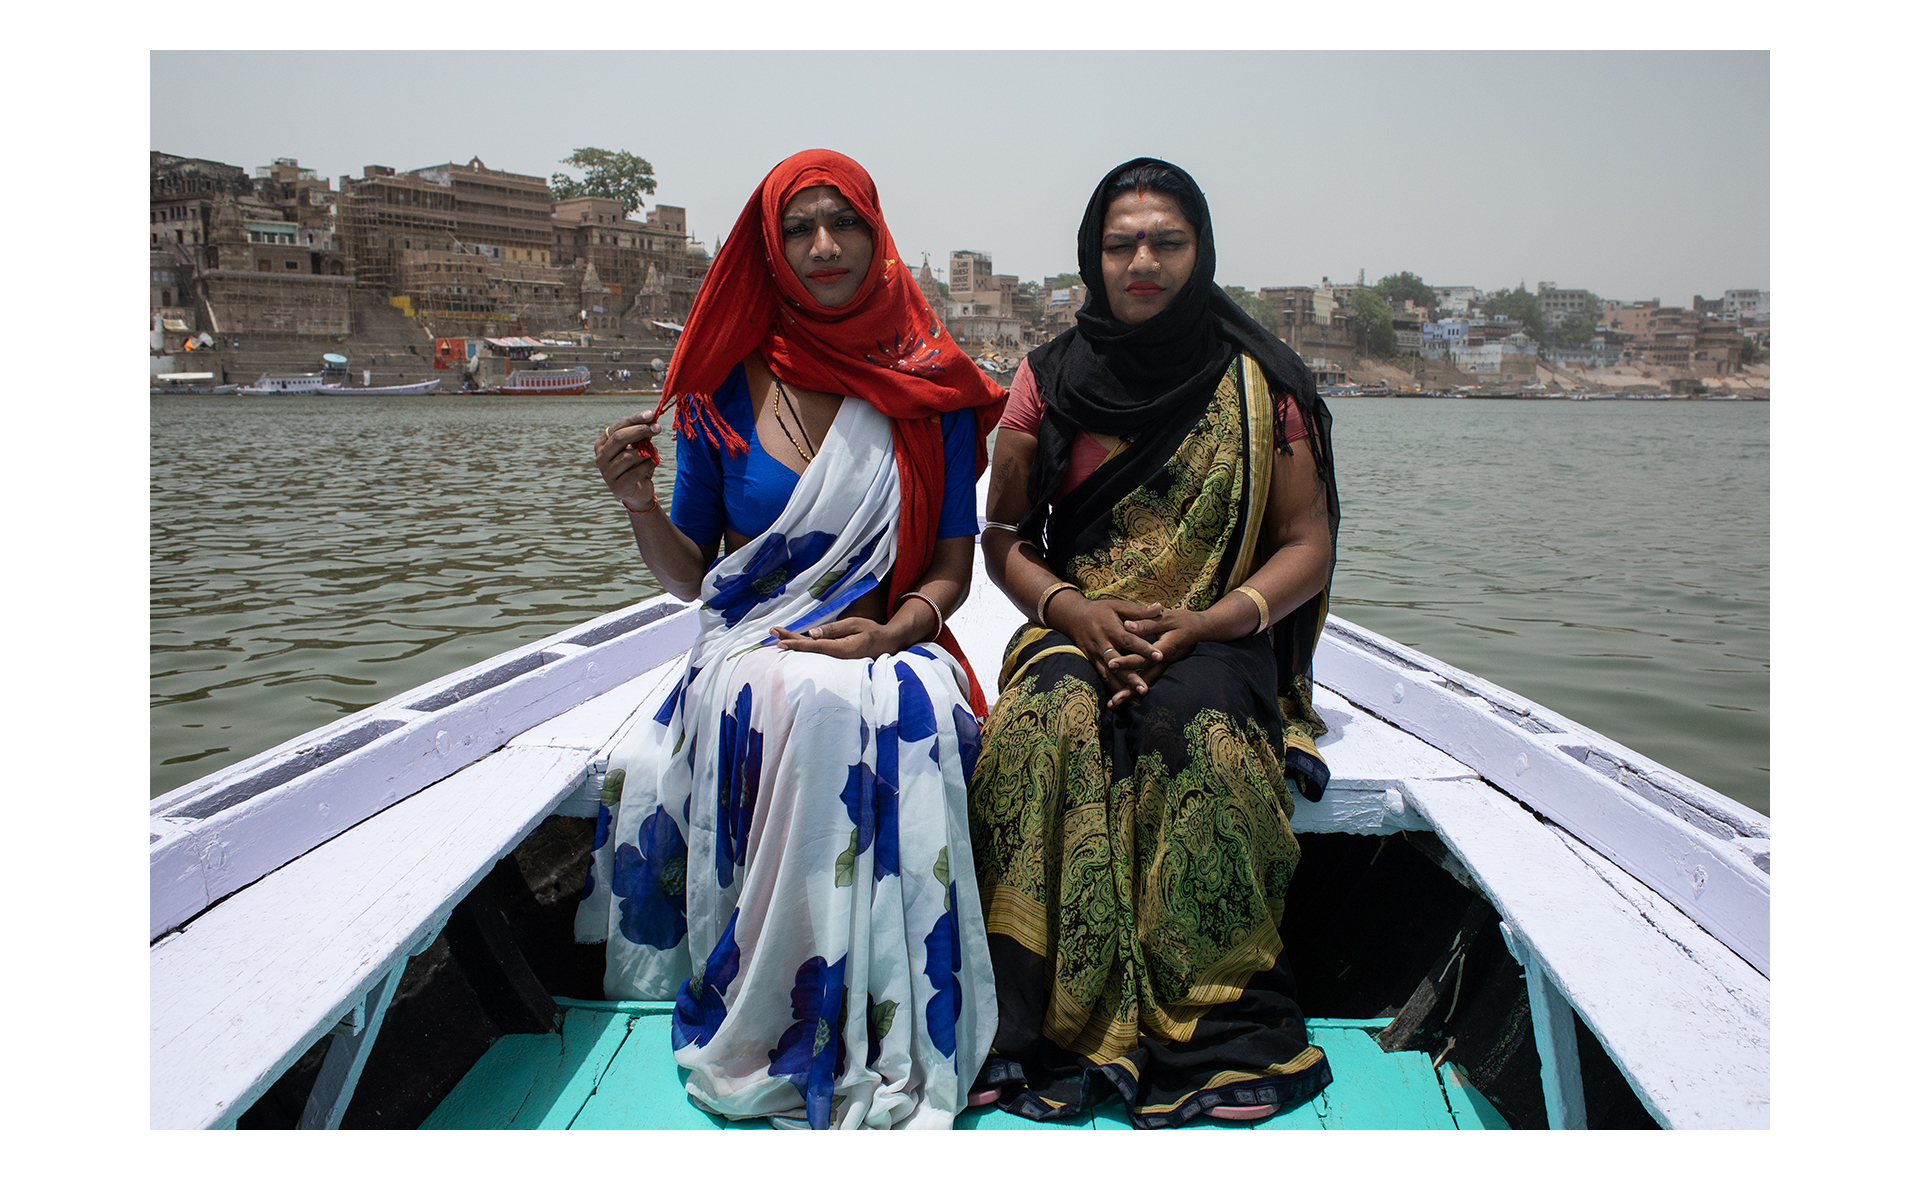 Rupaa e Muskan posam para retrato em um barco no rio Ganges, em Varanasi. Rupaa e Muskan são amigas e vivem na mesma comunidade de Hijras. Muskan frequentemente acompanha Rupaa quando elas precisam sair da comunidade, é comum as hijras circularem pela cidade em grupos por questões culturais e por segurança.